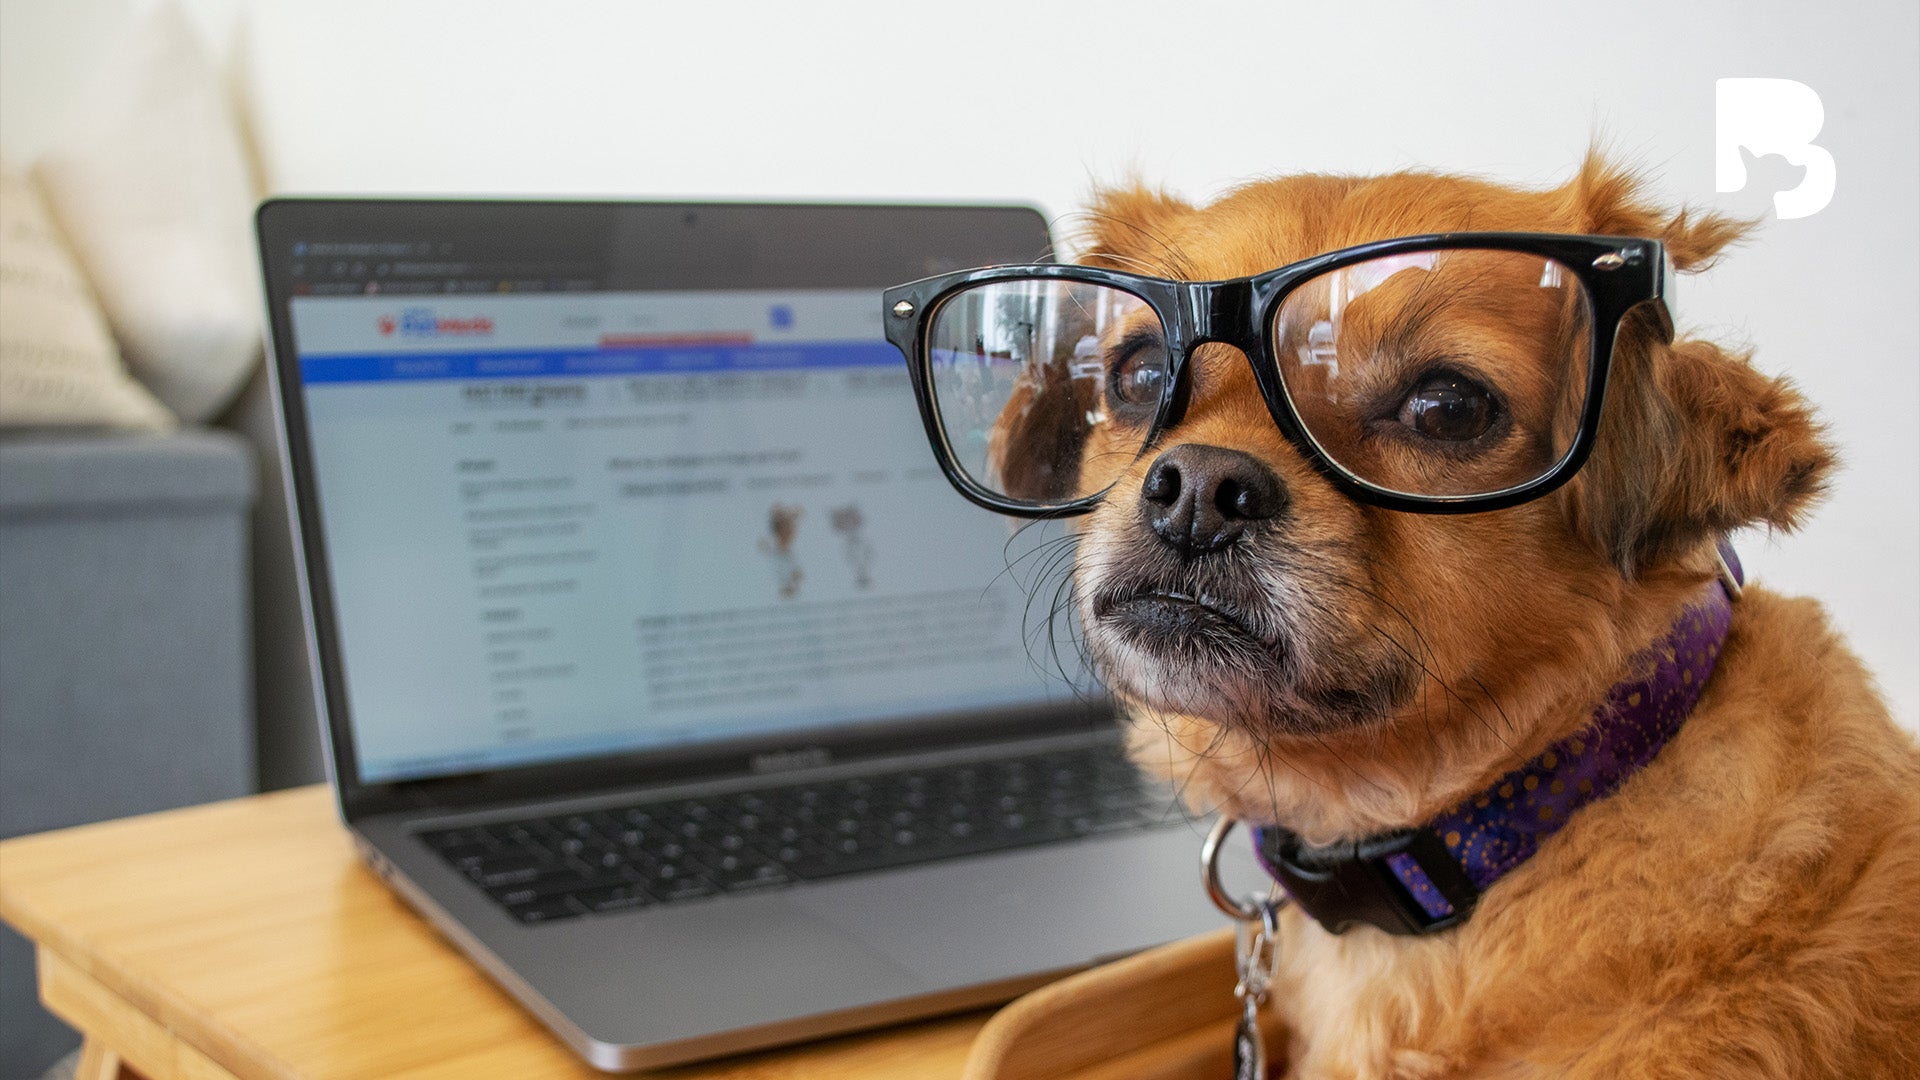 ByteBlog: Are Some Dog Breeds Just Smarter?